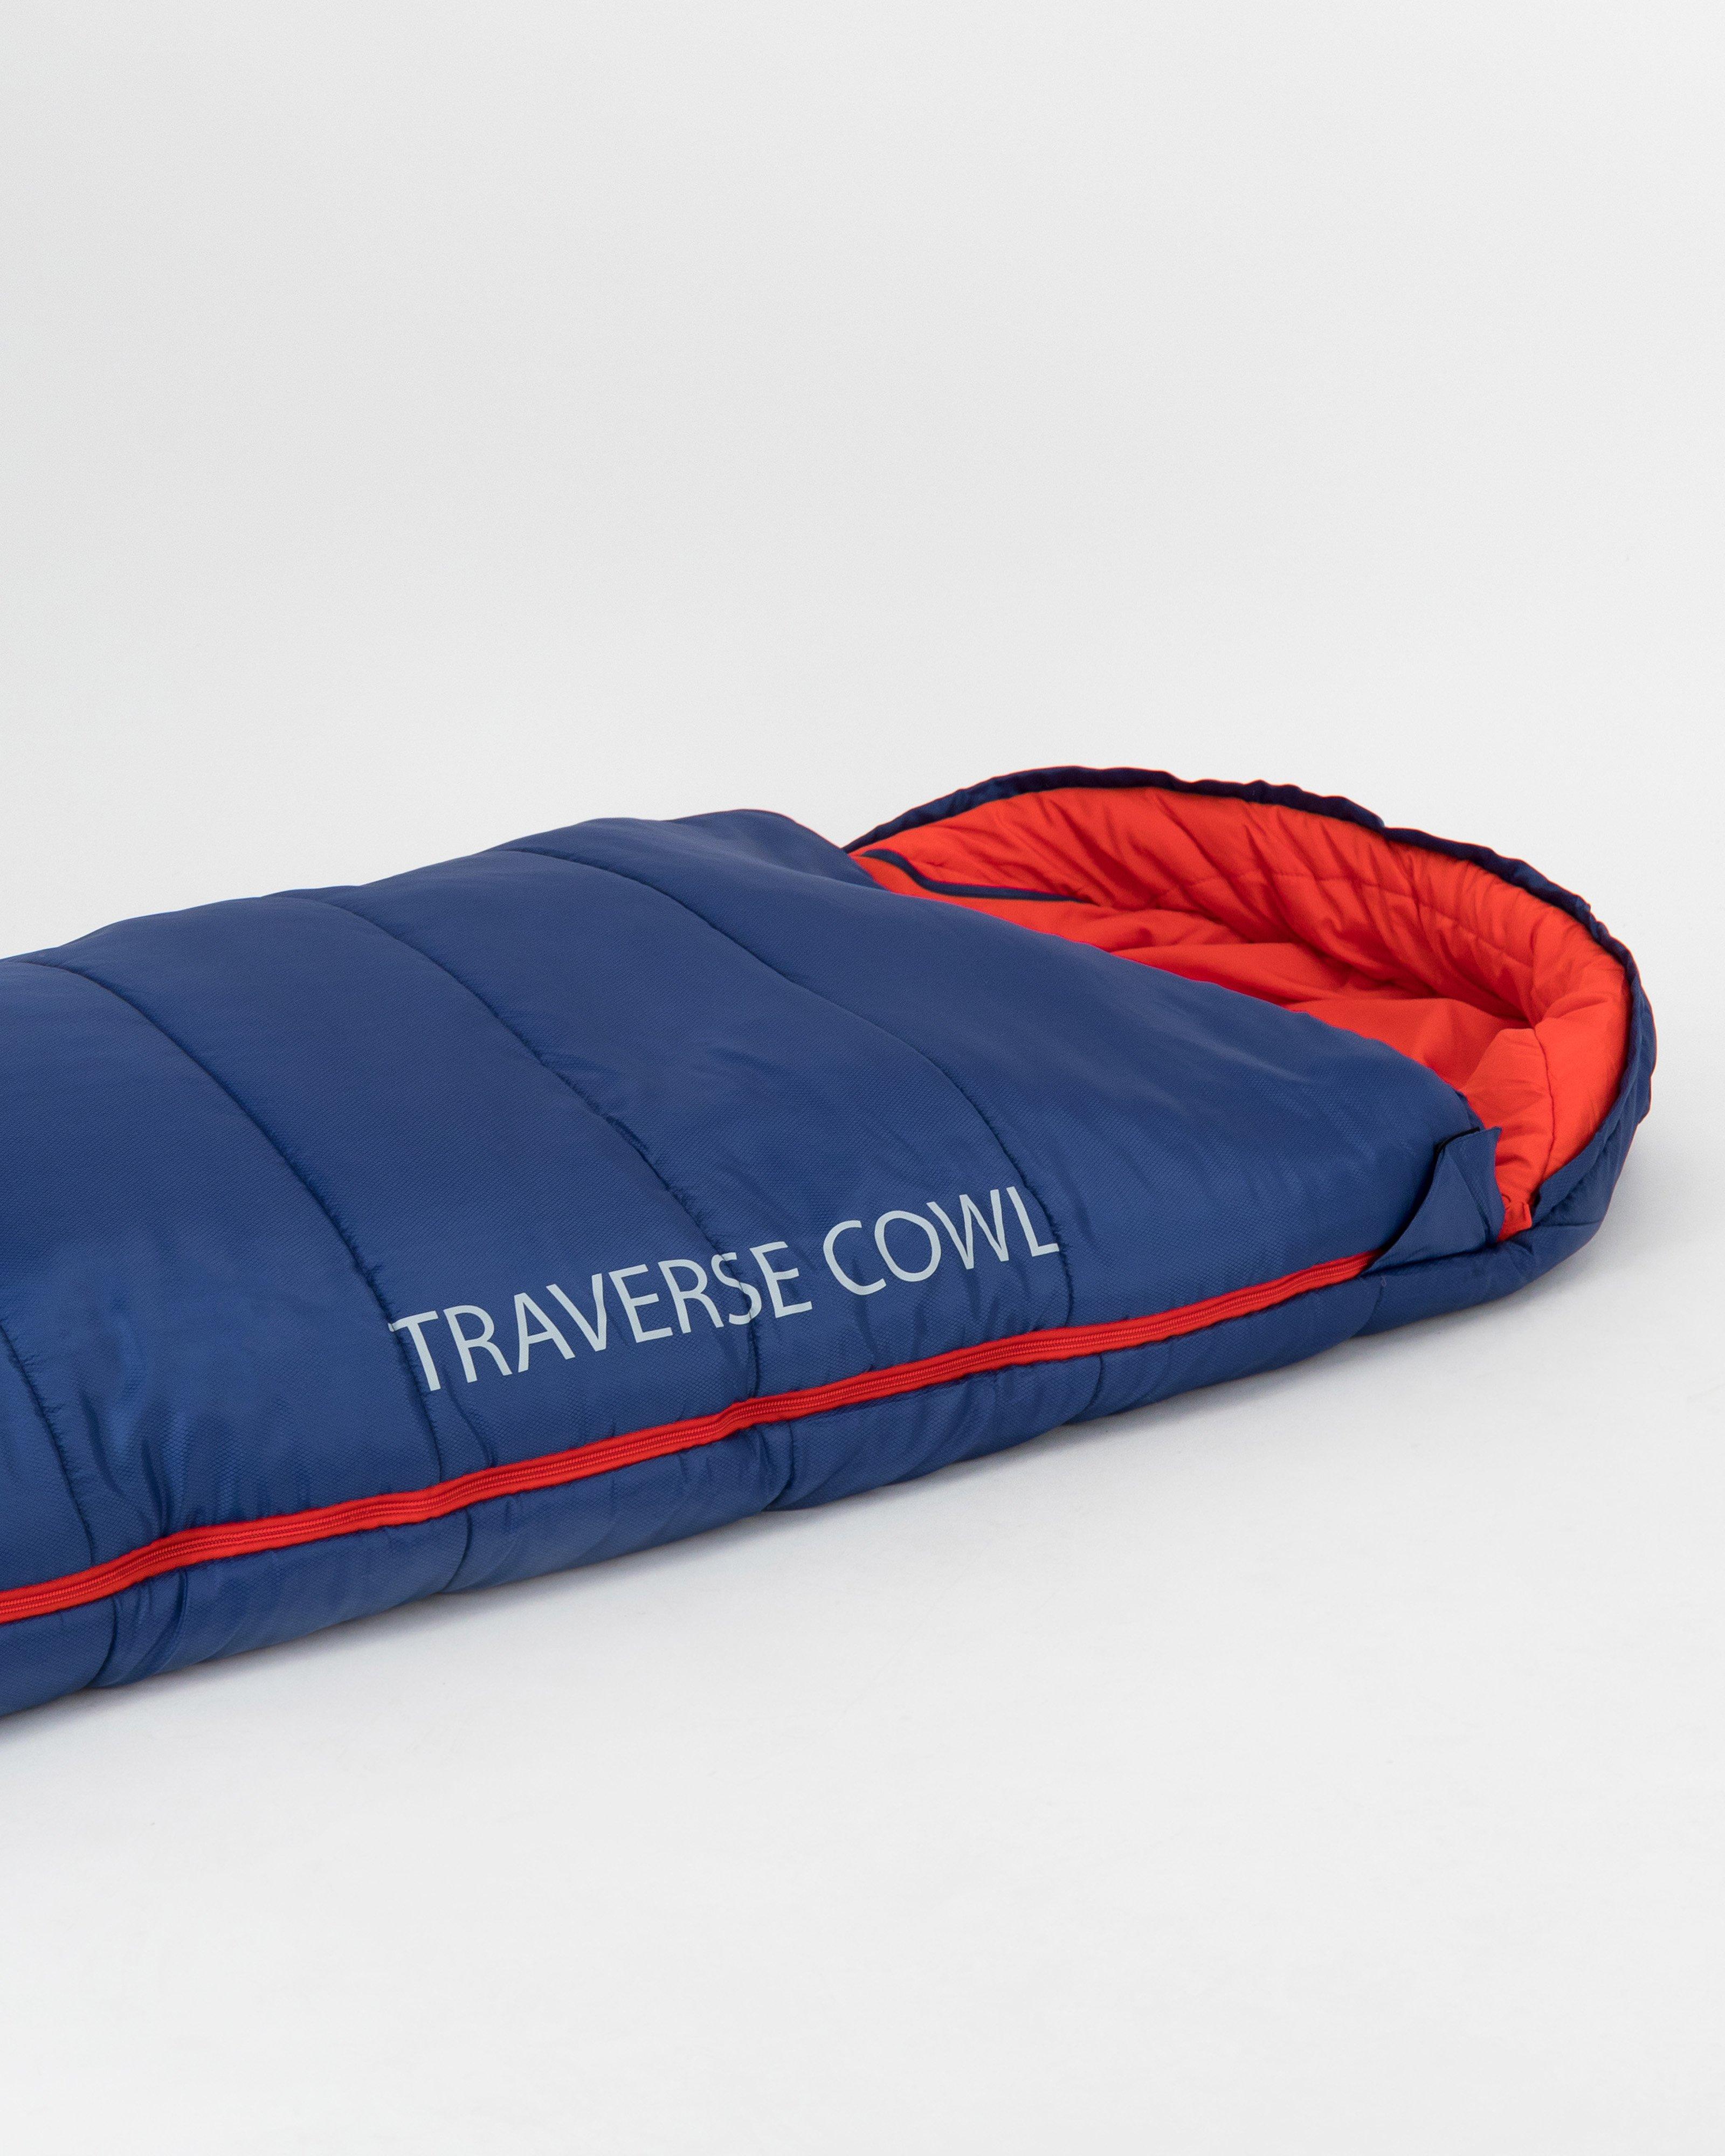 K-Way Traverse 2 Cowl Sleeping Bag -  Navy/Red